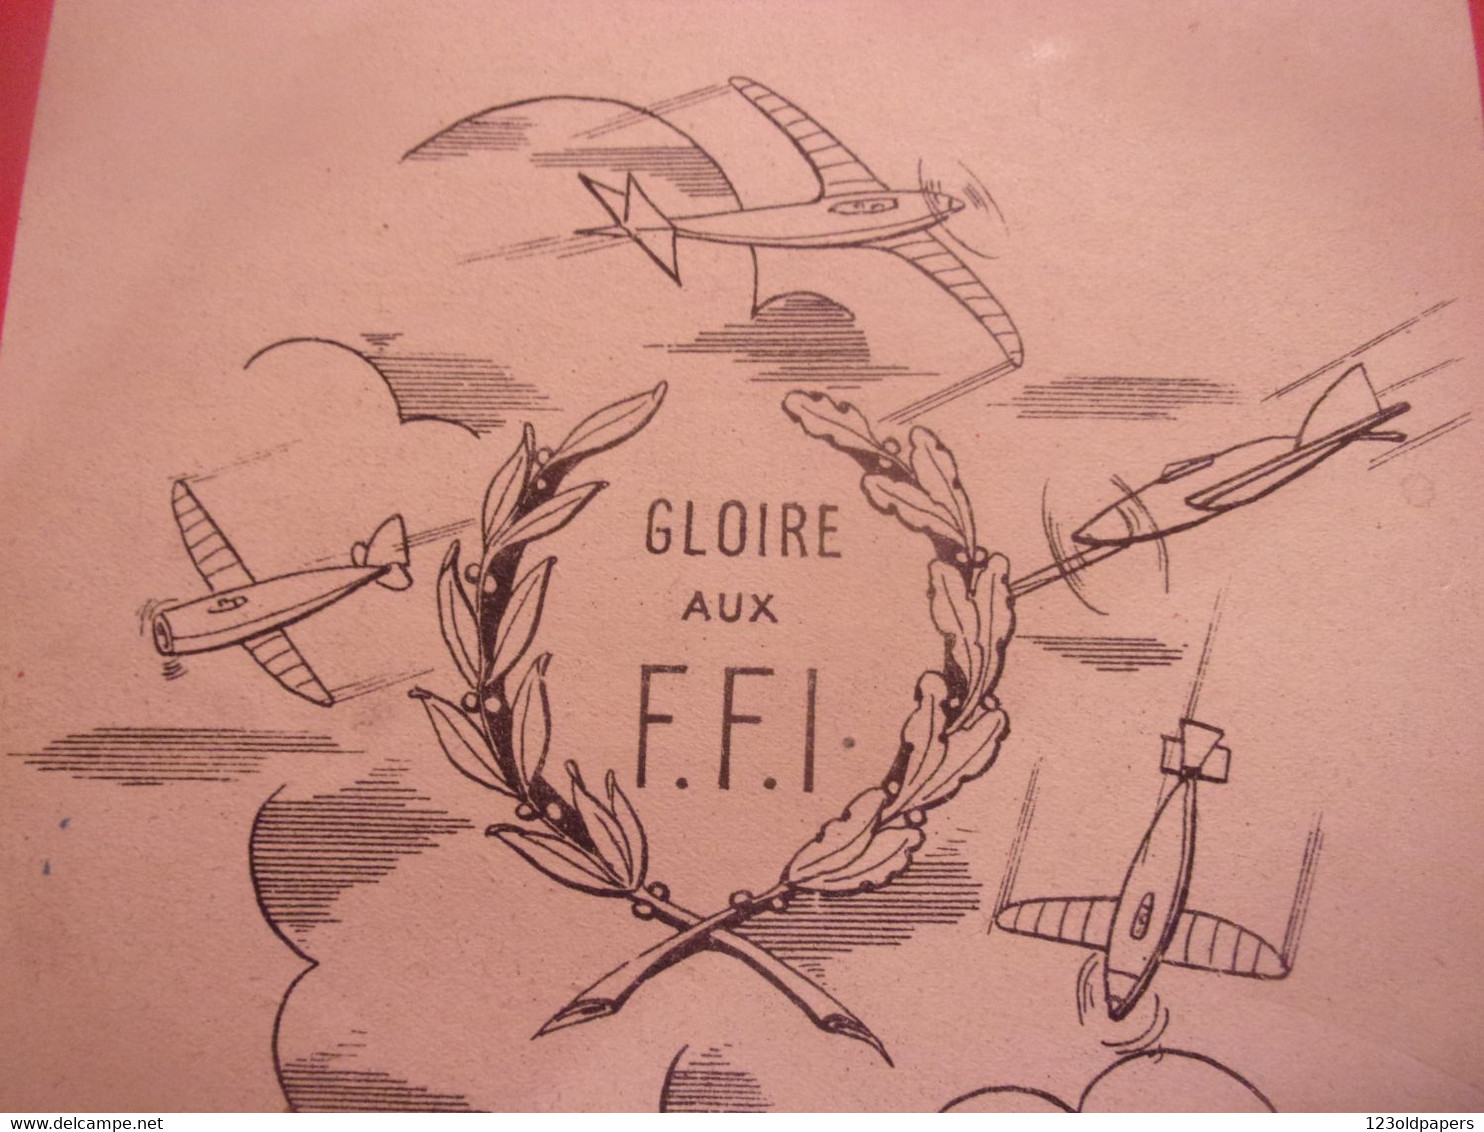 ️  FFI HISTOIRE D UN PETIT GARS DU MAQUIS illustrations de ED GUOD  WWII RESISTANCE